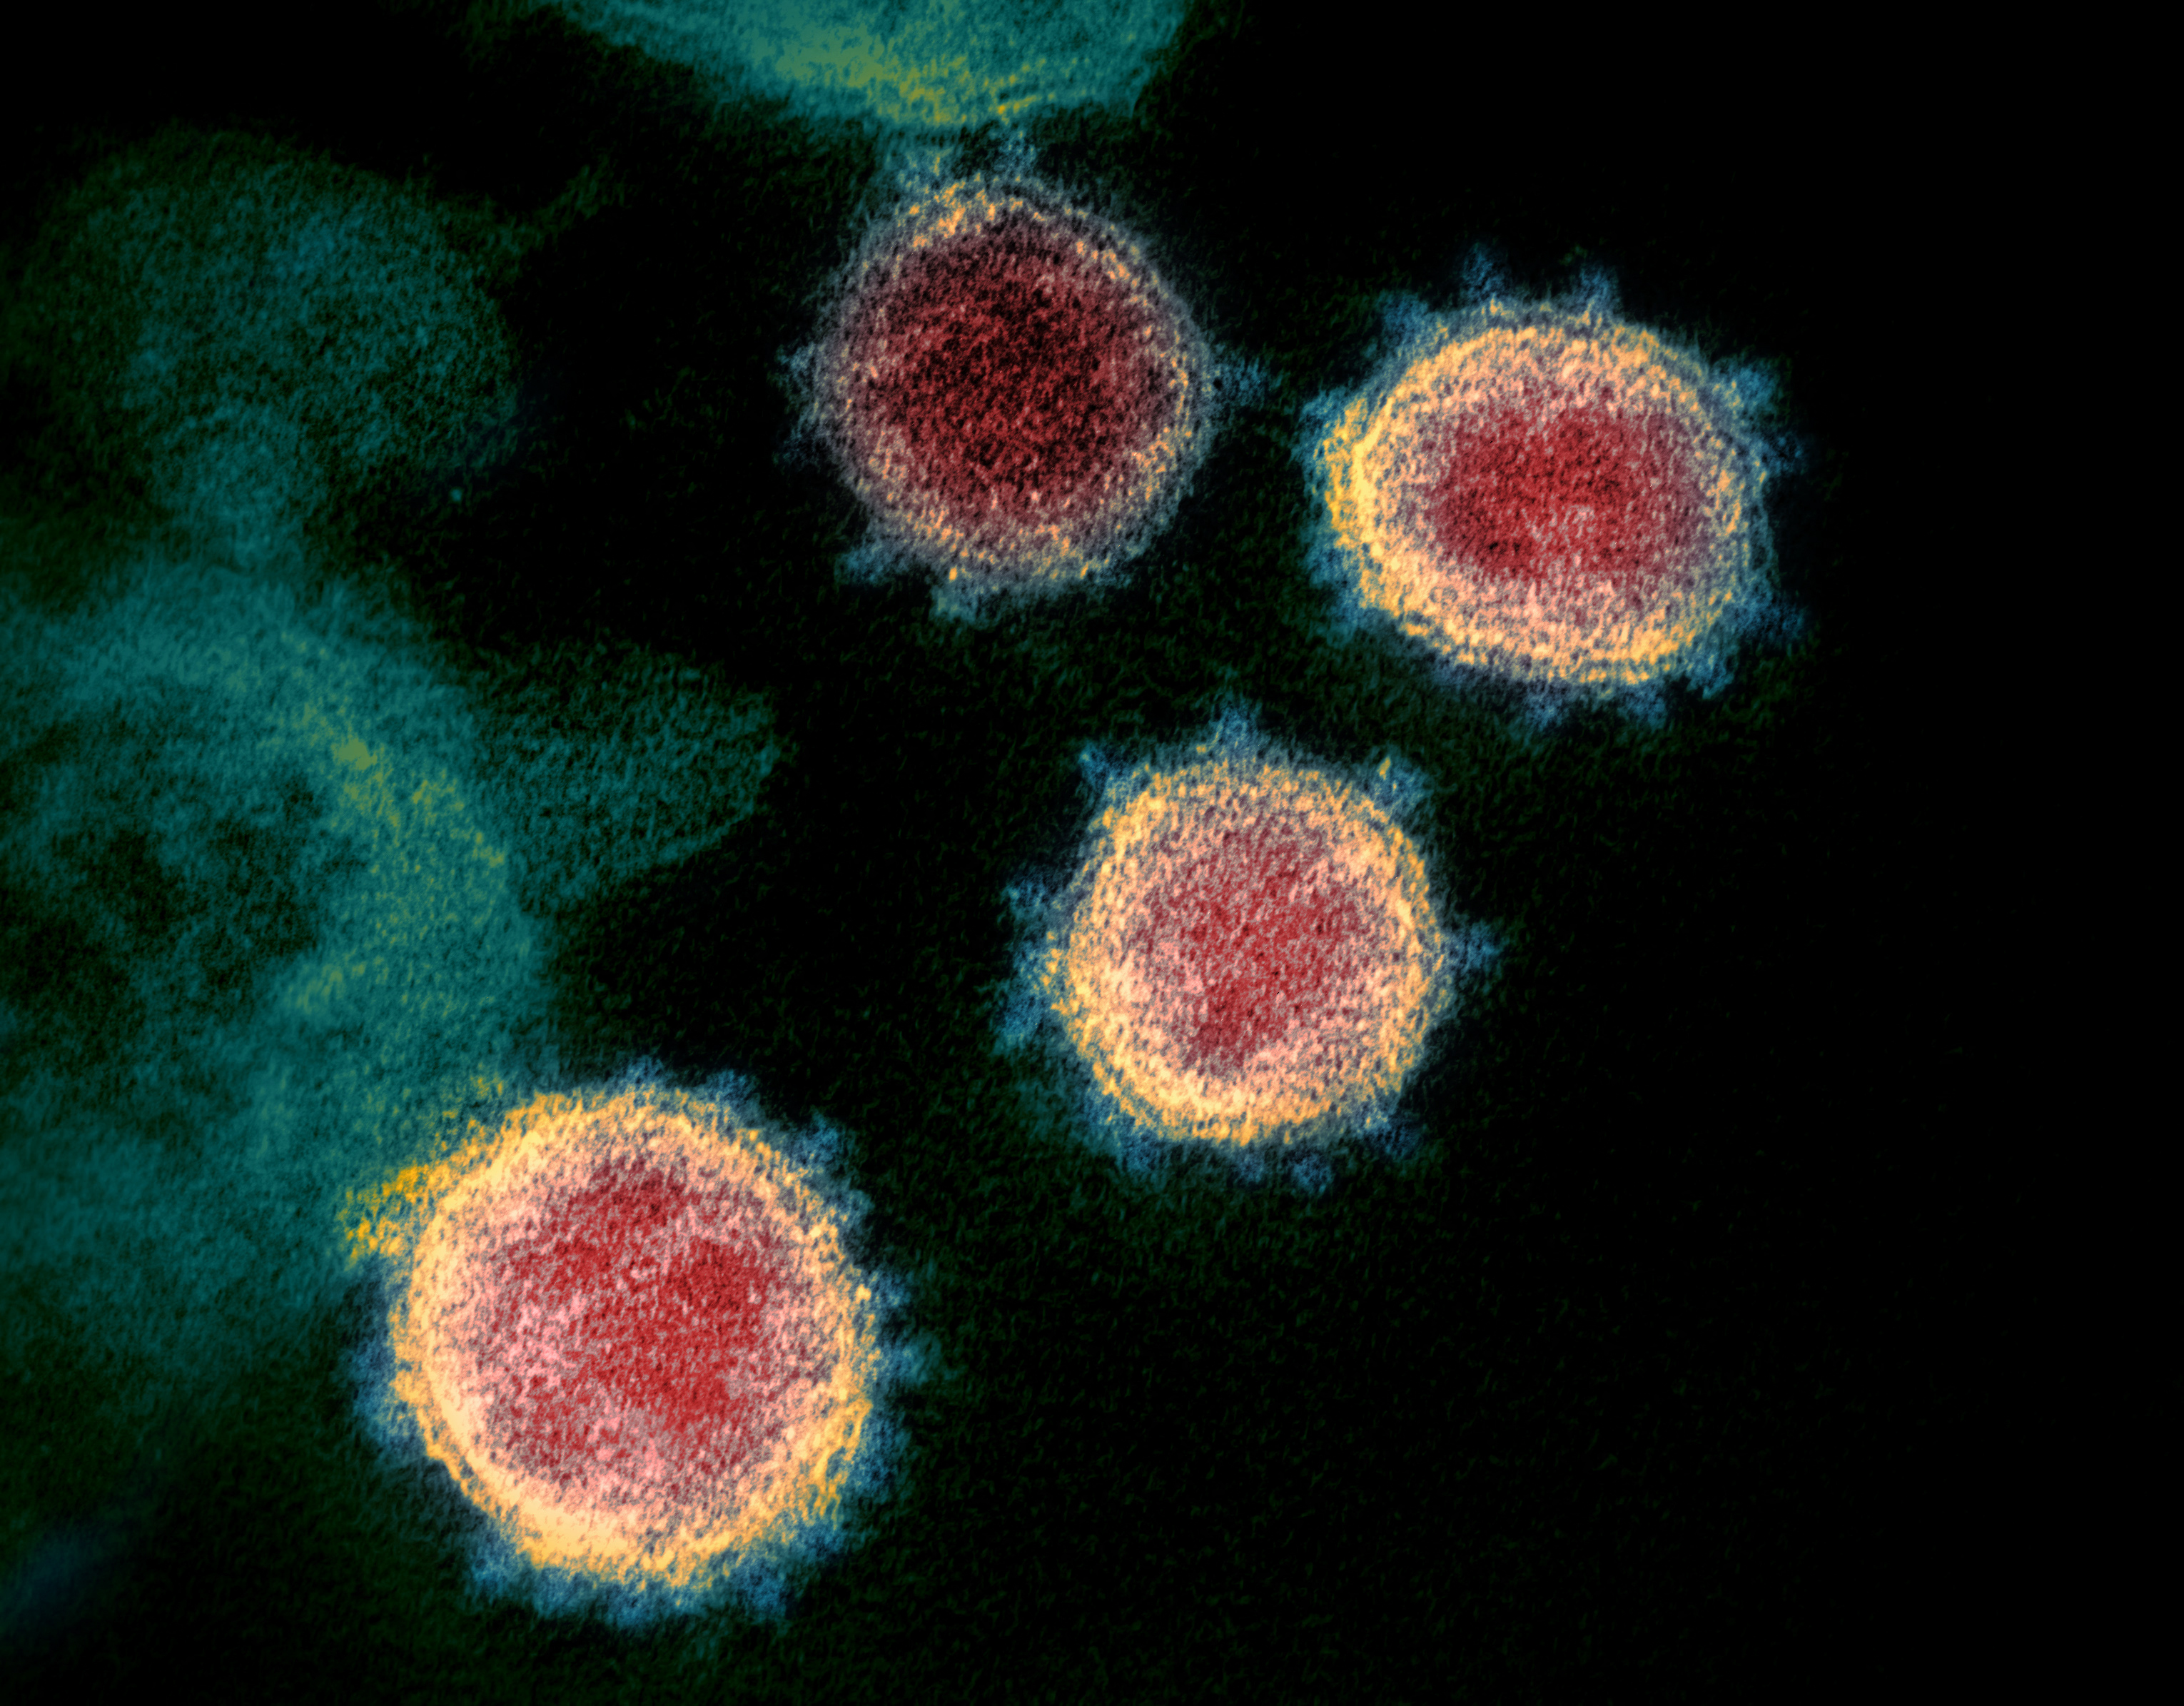 Több országban is kisebb pánikot keltett a koronavírus újonnan megjelent variánsa, a B.1.1.529